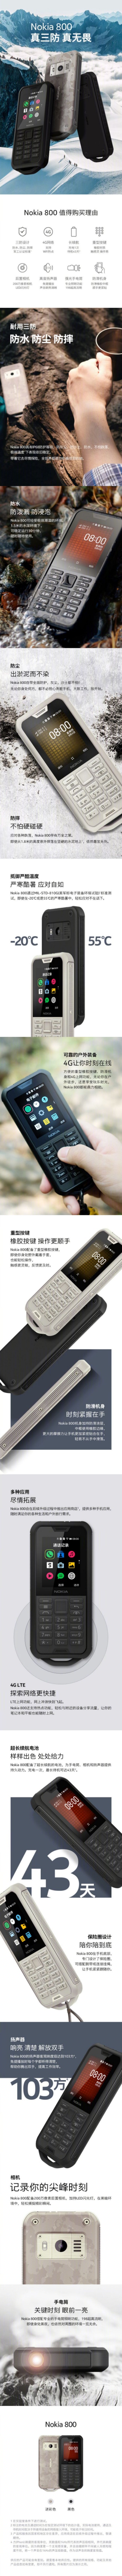 Nokia今天公布Nokia 2720和Nokia 800